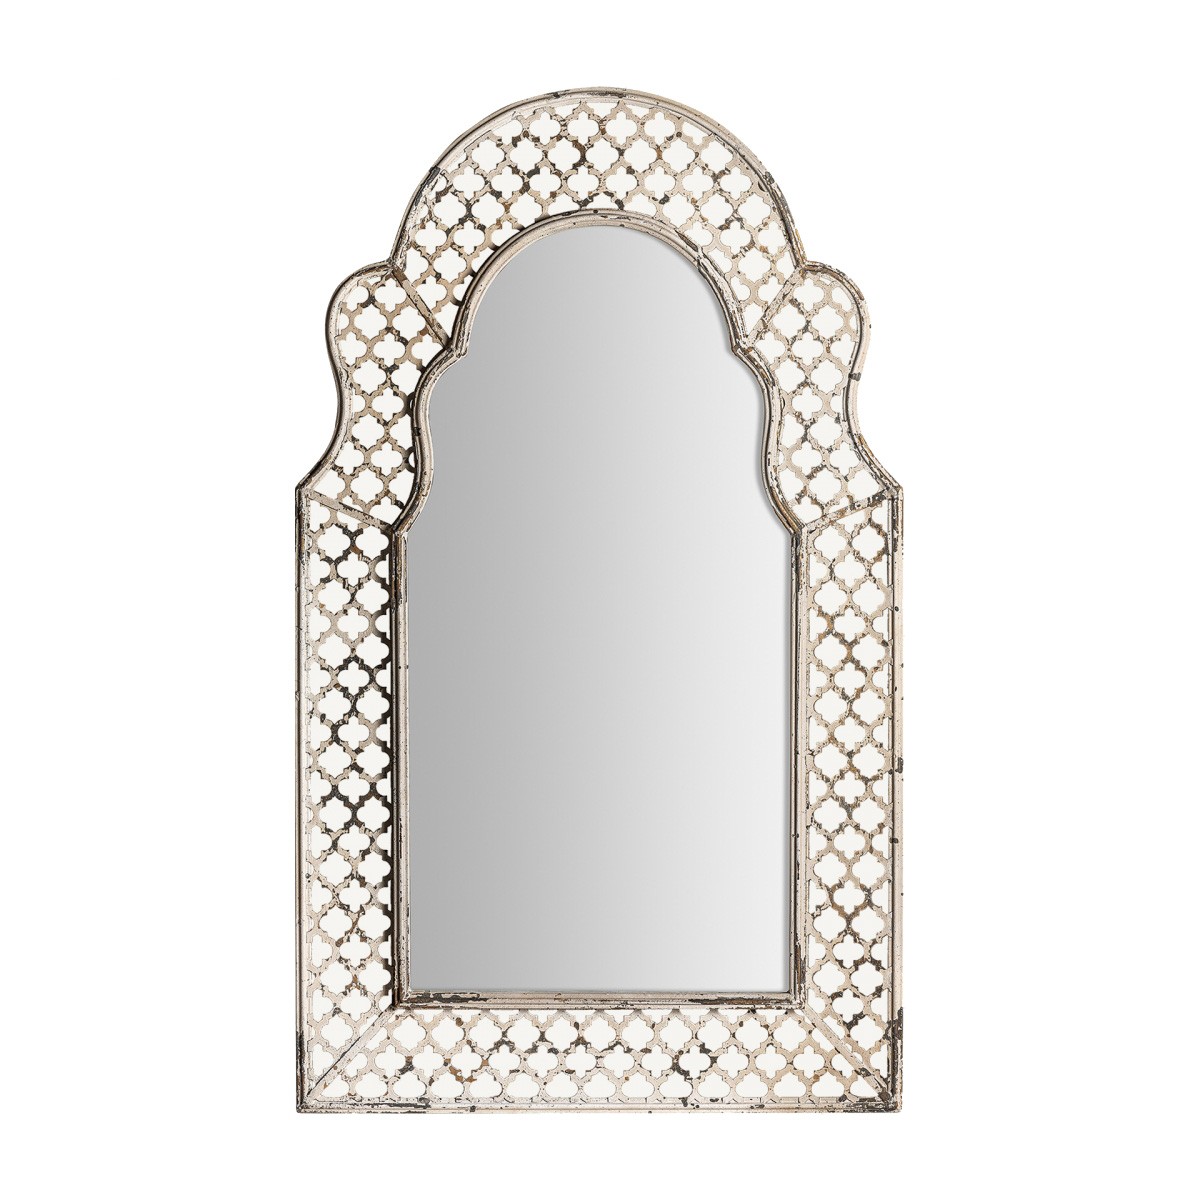 Levně Estila Provence luxusní nástěnné zrcadlo Melisandry s ozdobným rámem z kovu šedé barvy s patinou 130cm